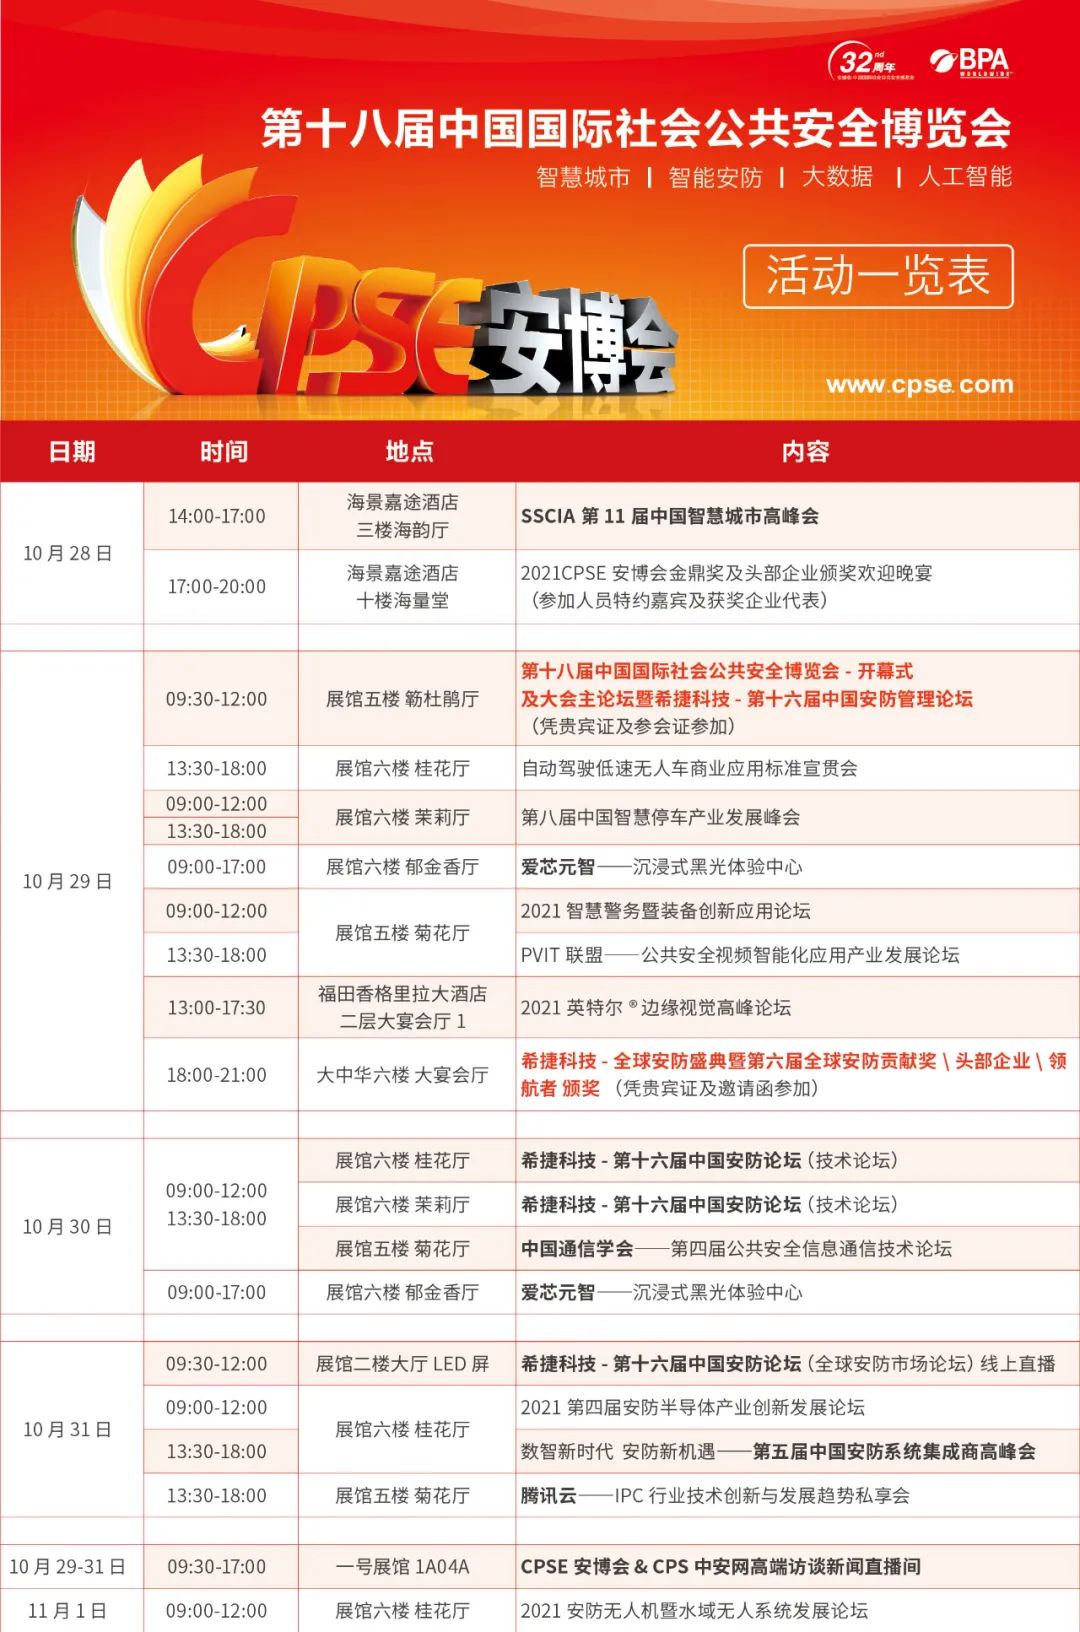 天天盈球(中国)集团有限公司邀您参加2021CPSE安博会！ 天天盈球动态 第3张